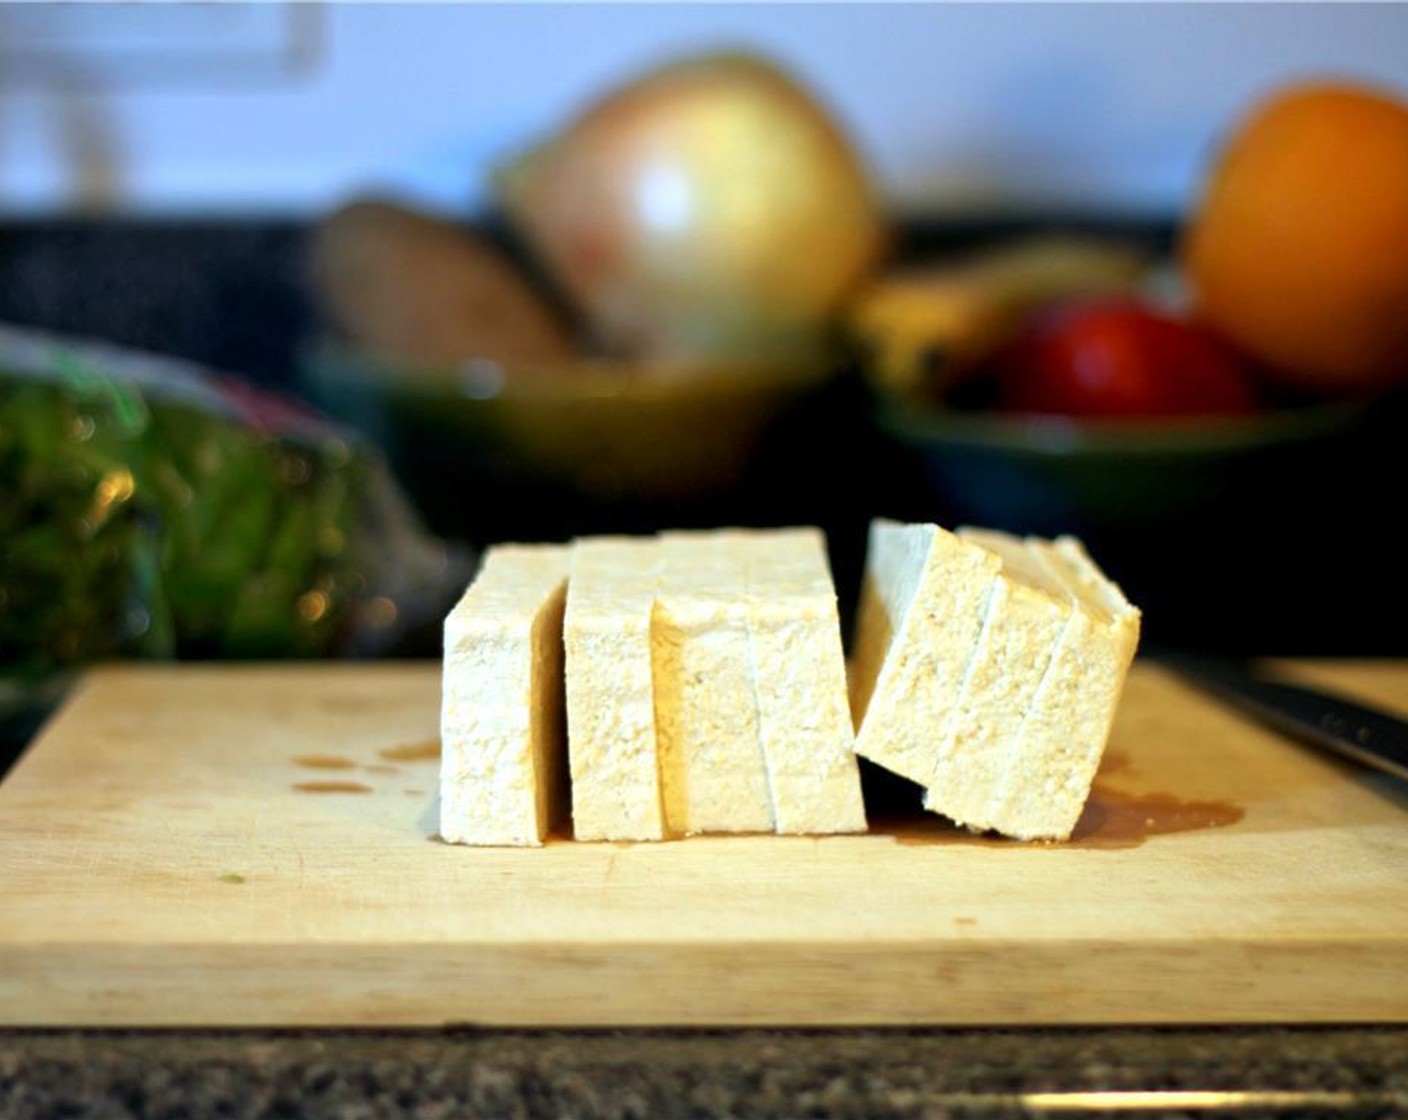 Schritt 2 Tofu (1/2 Pck.) in 4 gleichmässige Scheiben schneiden. Die Scheiben zwischen mehrere Lagen Küchenpapier legen und andrücken, um die Flüssigkeit aufzusaugen.